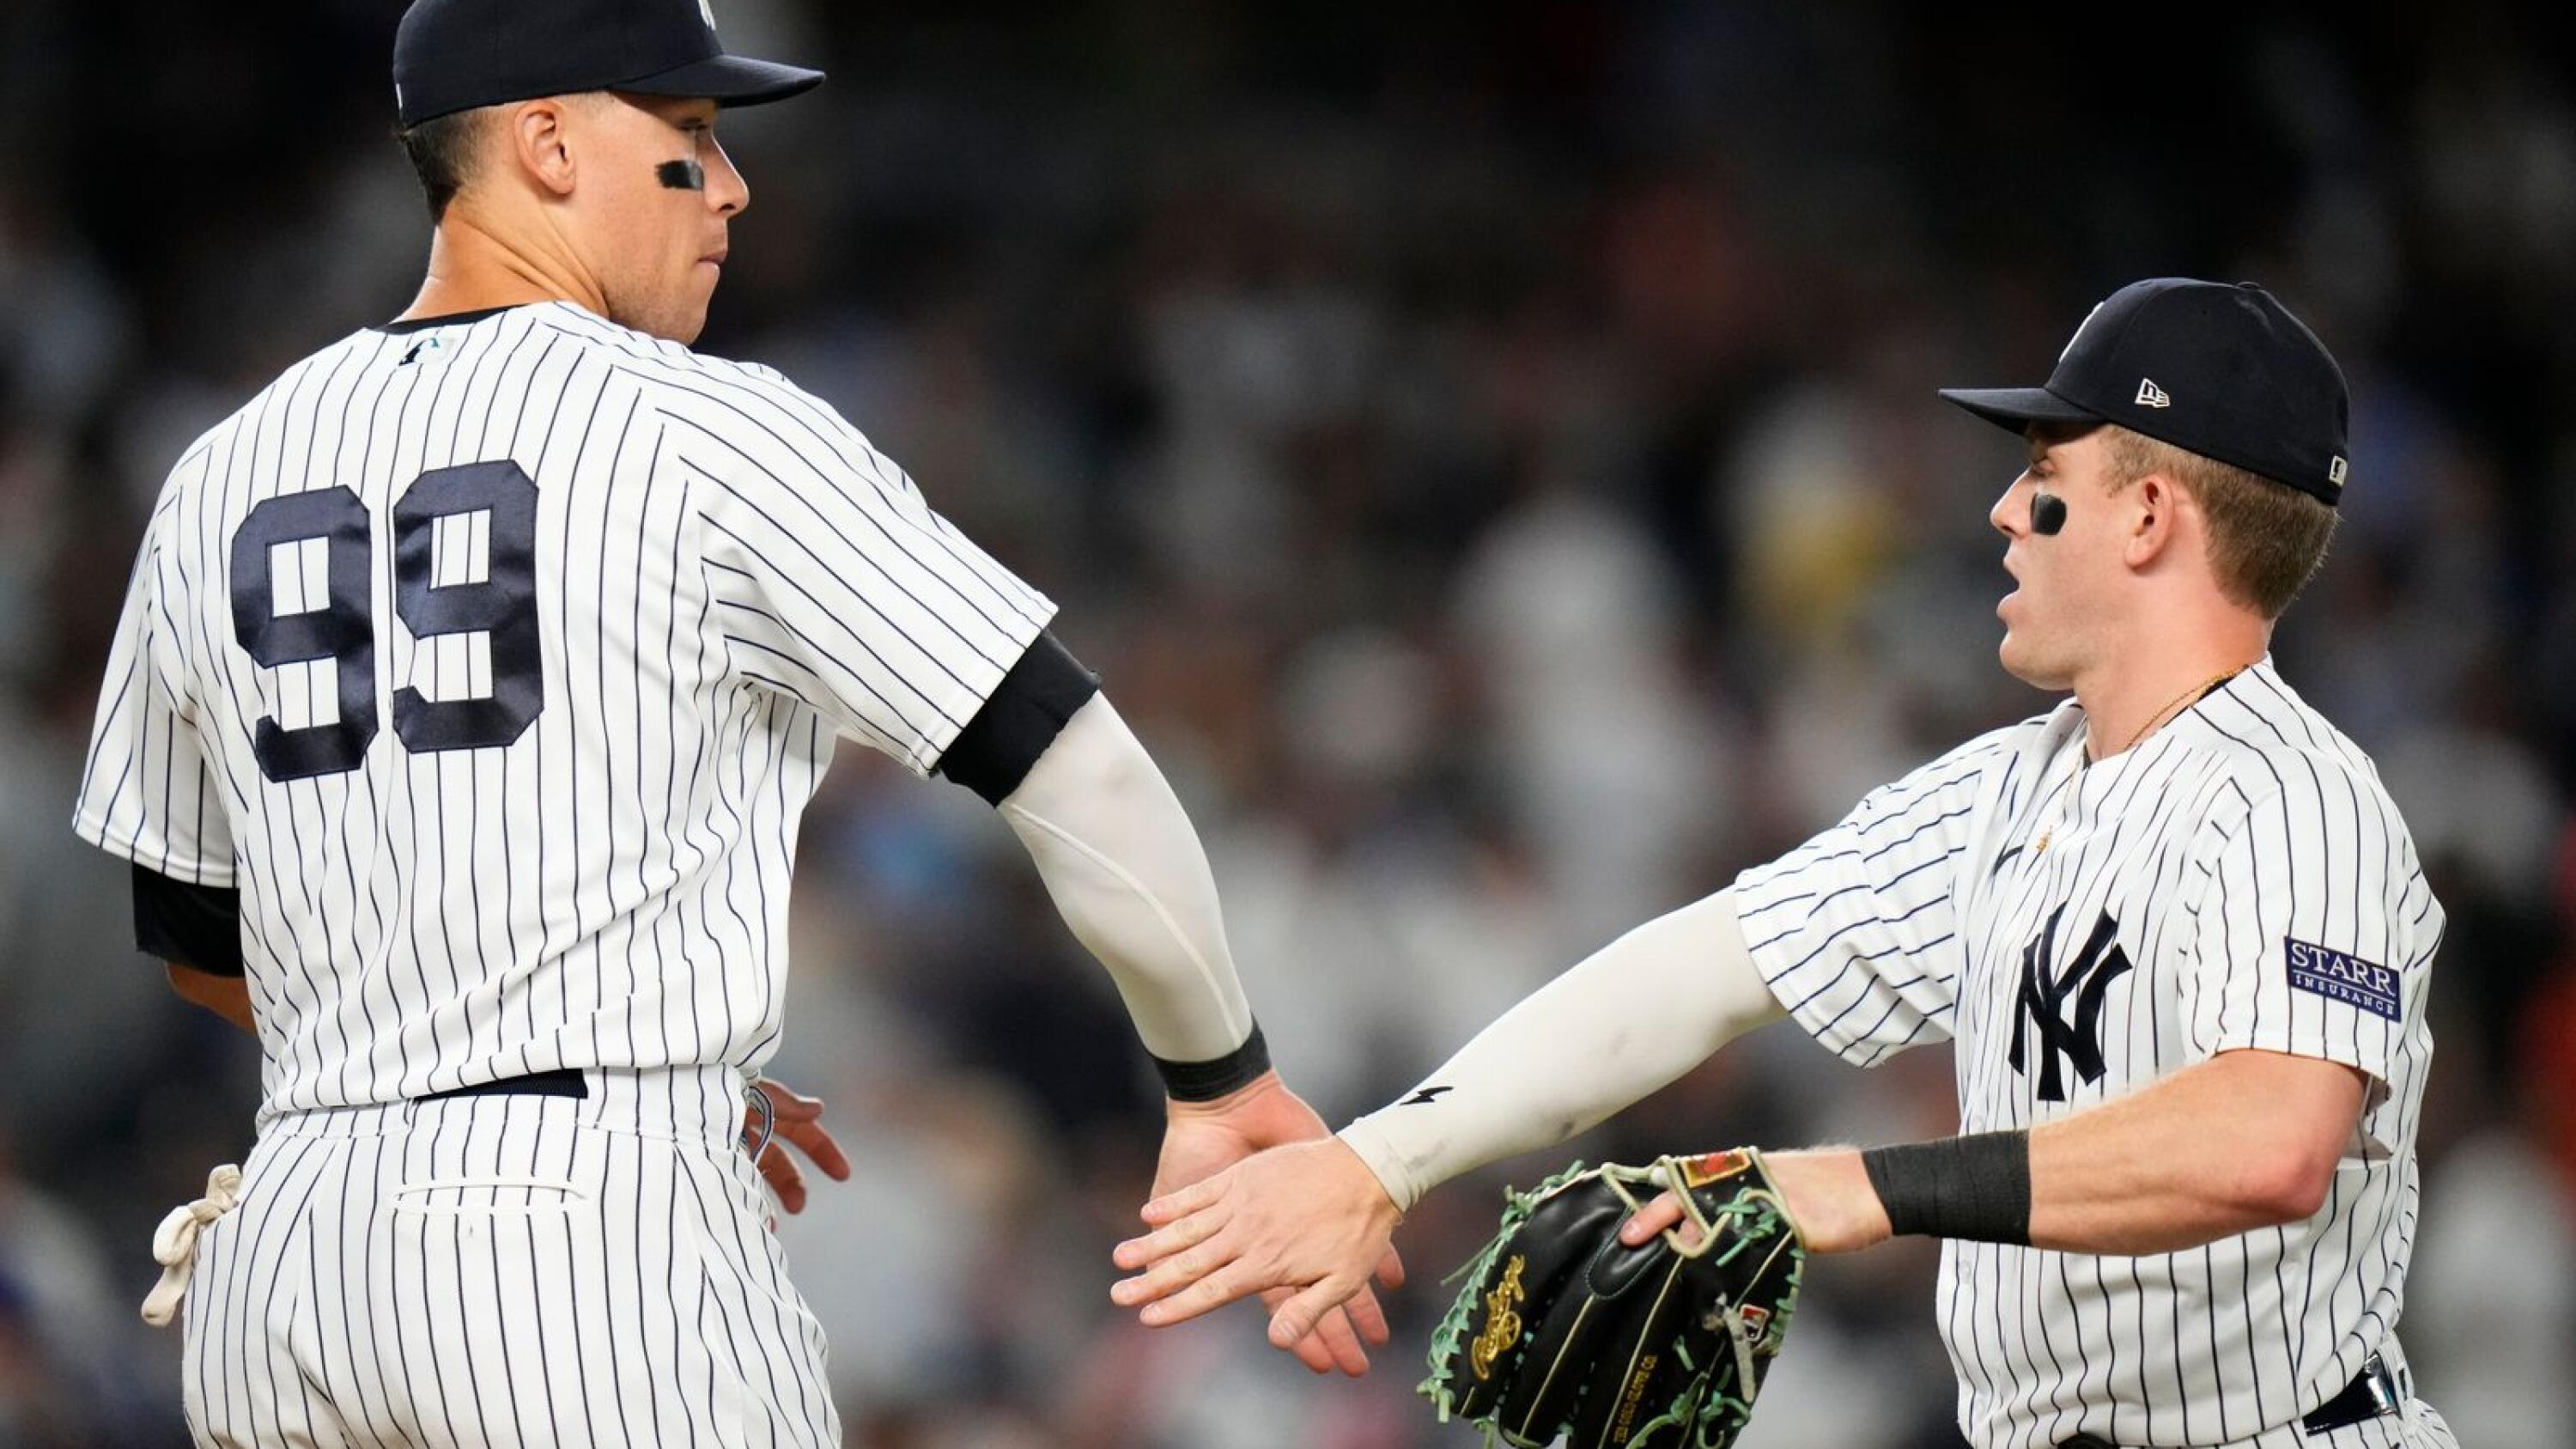 Volpe delivers tiebreaking RBI single as Yankees top Astros